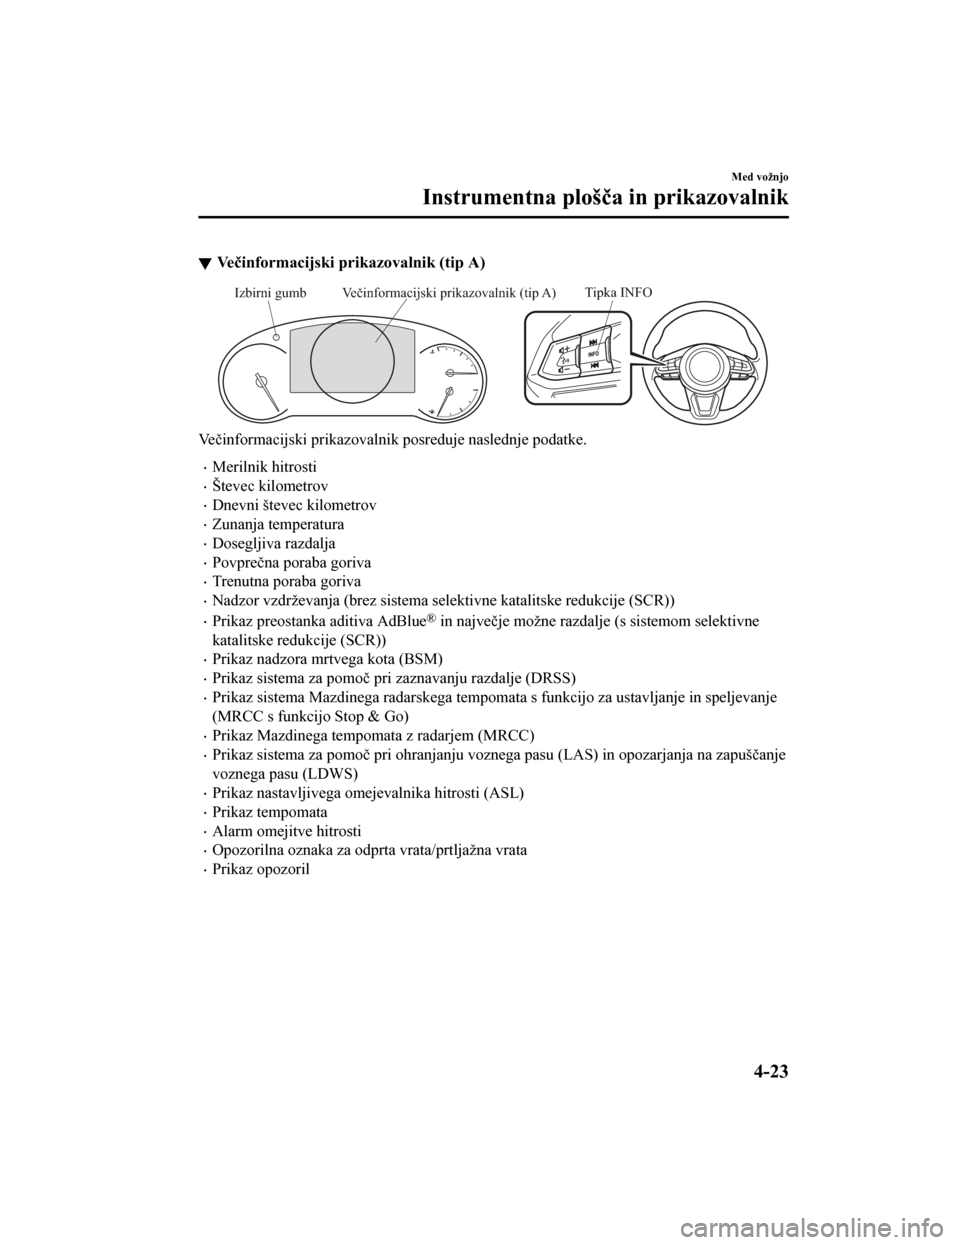 MAZDA MODEL CX-5 2019  Priročnik za lastnika (in Slovenian) Večinformacijski prikazovalnik (tip A)
Tipka INFOVečinformacijski prikazovalnik (tip A)
Izbirni gumb
Večinformacijski prikazovalnik posreduje naslednje podatke.
•Merilnik hitrosti
•Števec kilo